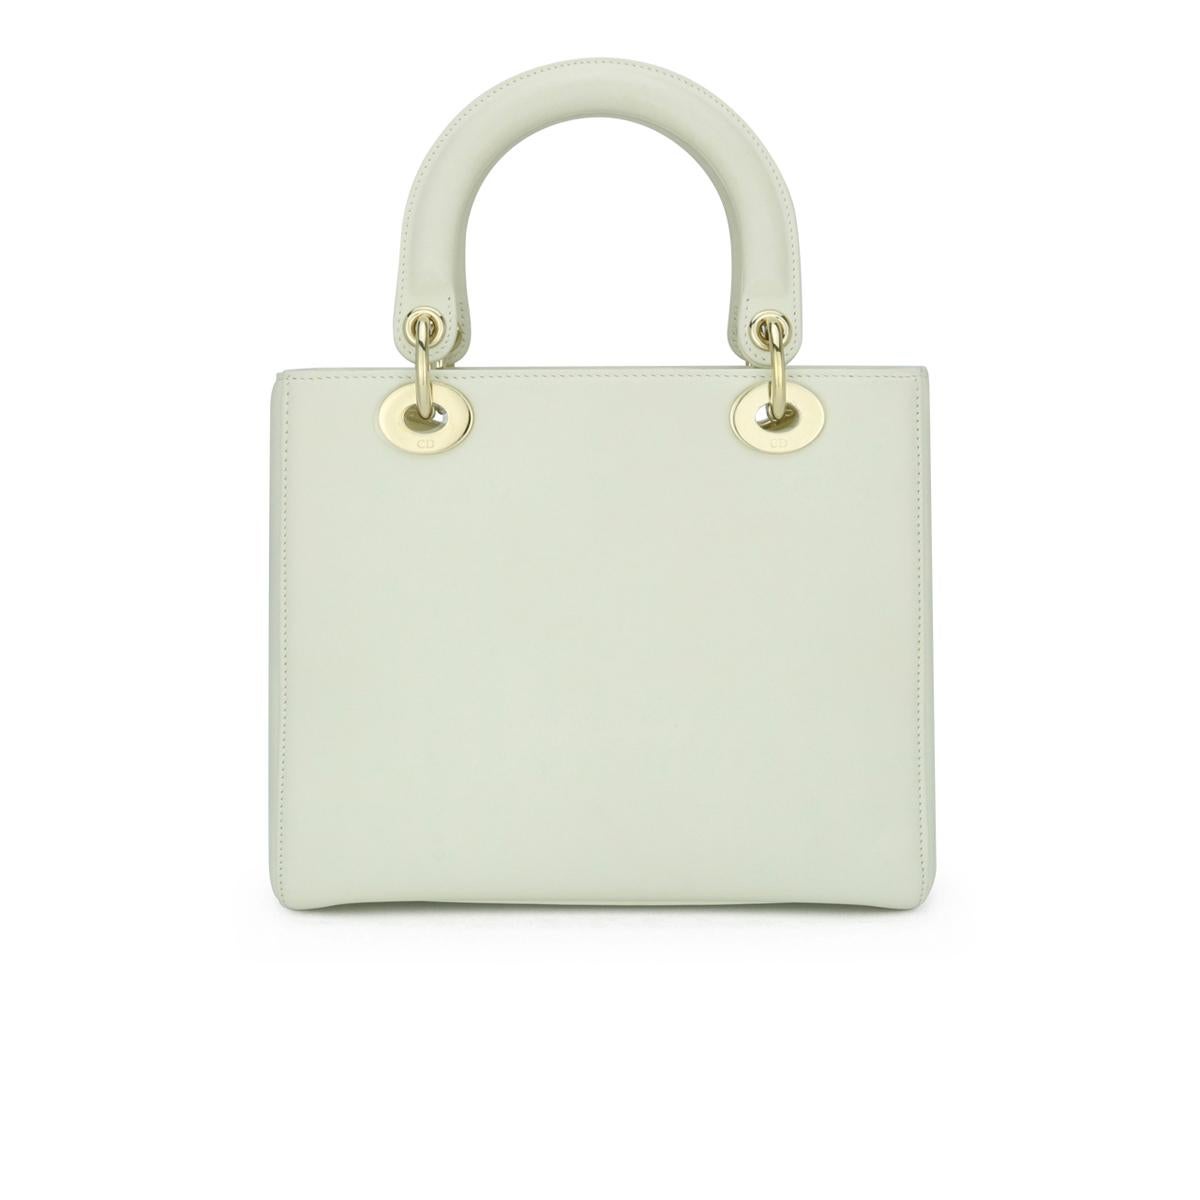 Christian Dior Lady Dior Medium Bag in Amour Print Off White Calfskin mit Gold Hardware 2018.

Diese Tasche ist in sehr gutem Zustand. 

Diese atemberaubende Tasche wurde in Zusammenarbeit mit der Künstlerin Niki de Saint Phalle für die Collection'S